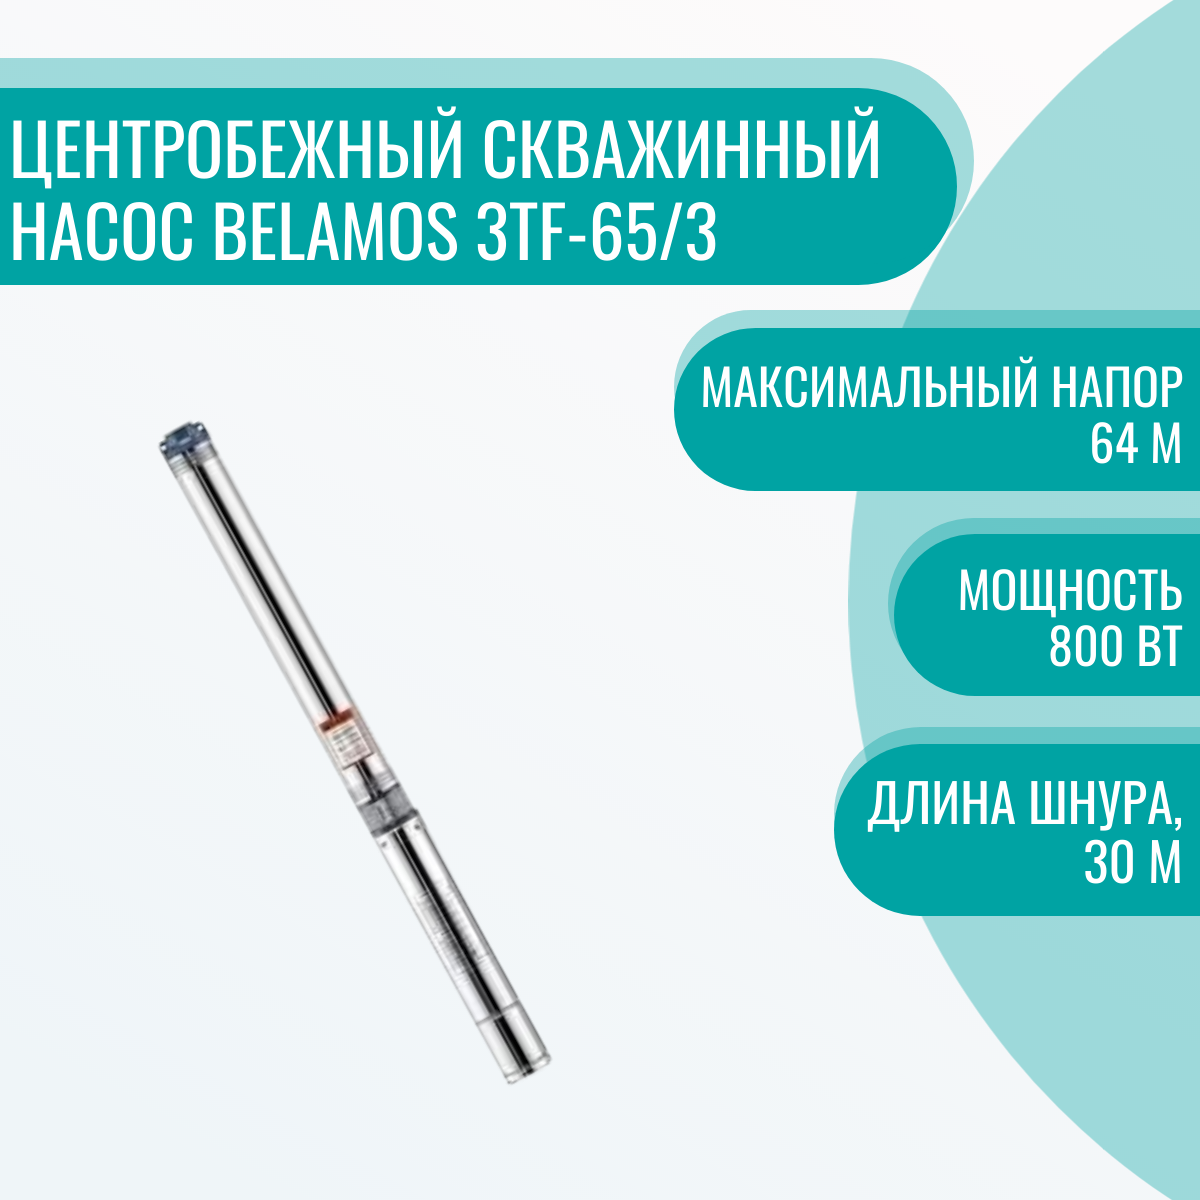 Центробежный скважинный насос Belamos 3TF-65/3